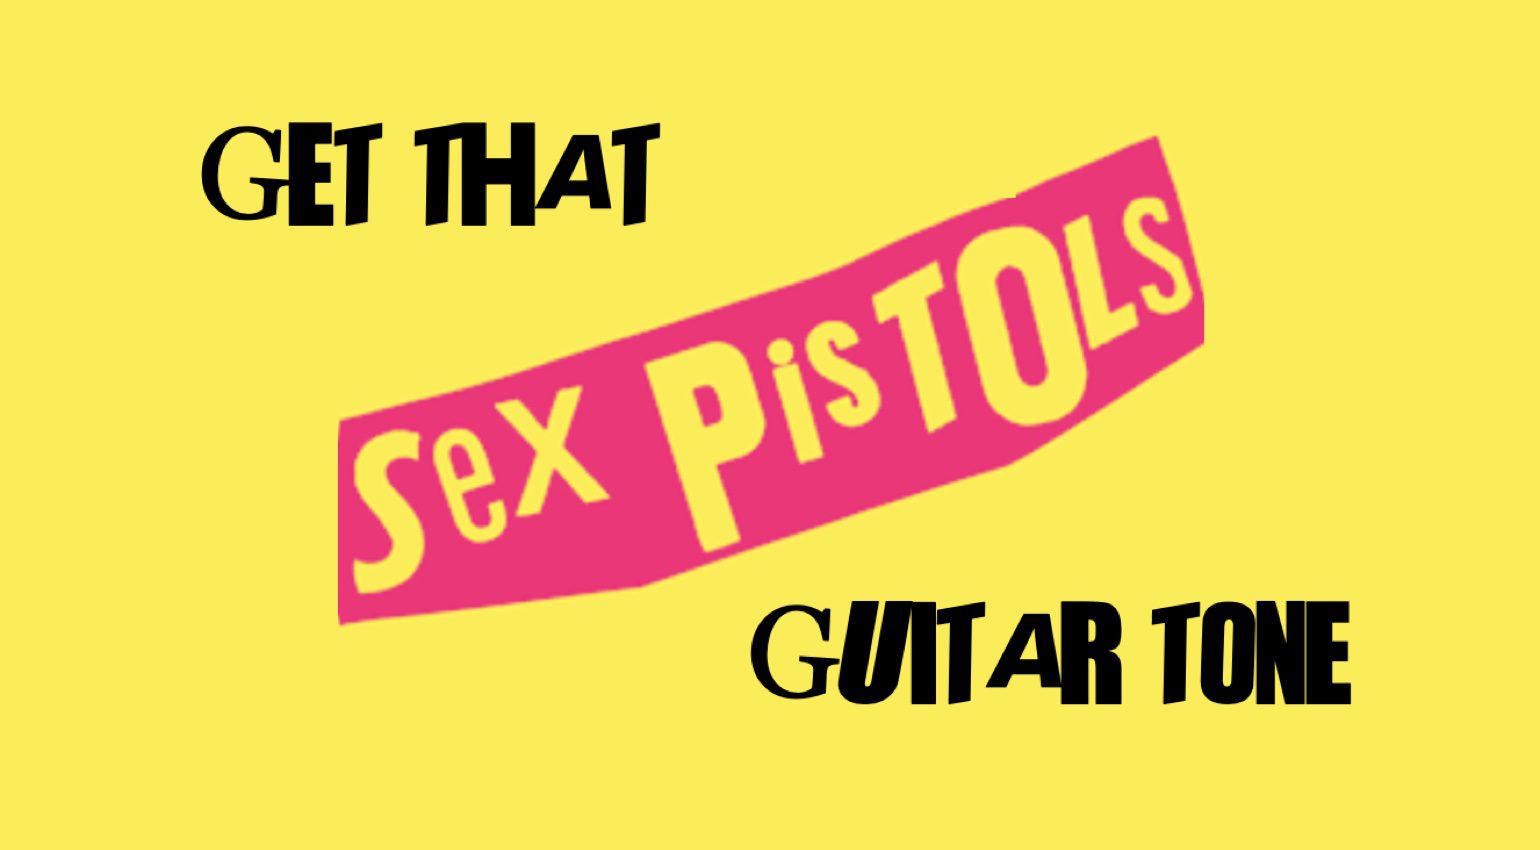 Adoptez le ton des Sex Pistols : la plate-forme de guitare Steve Jones